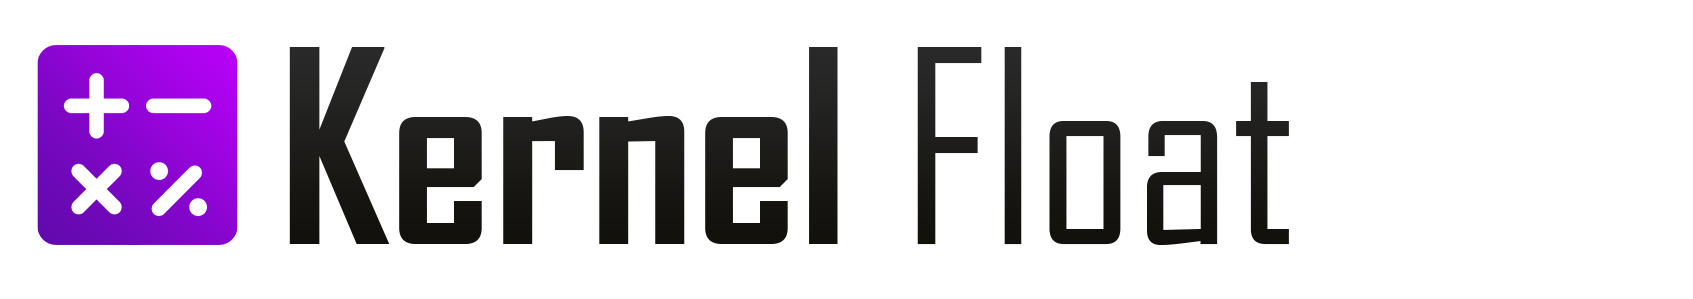 Kernel Float logo